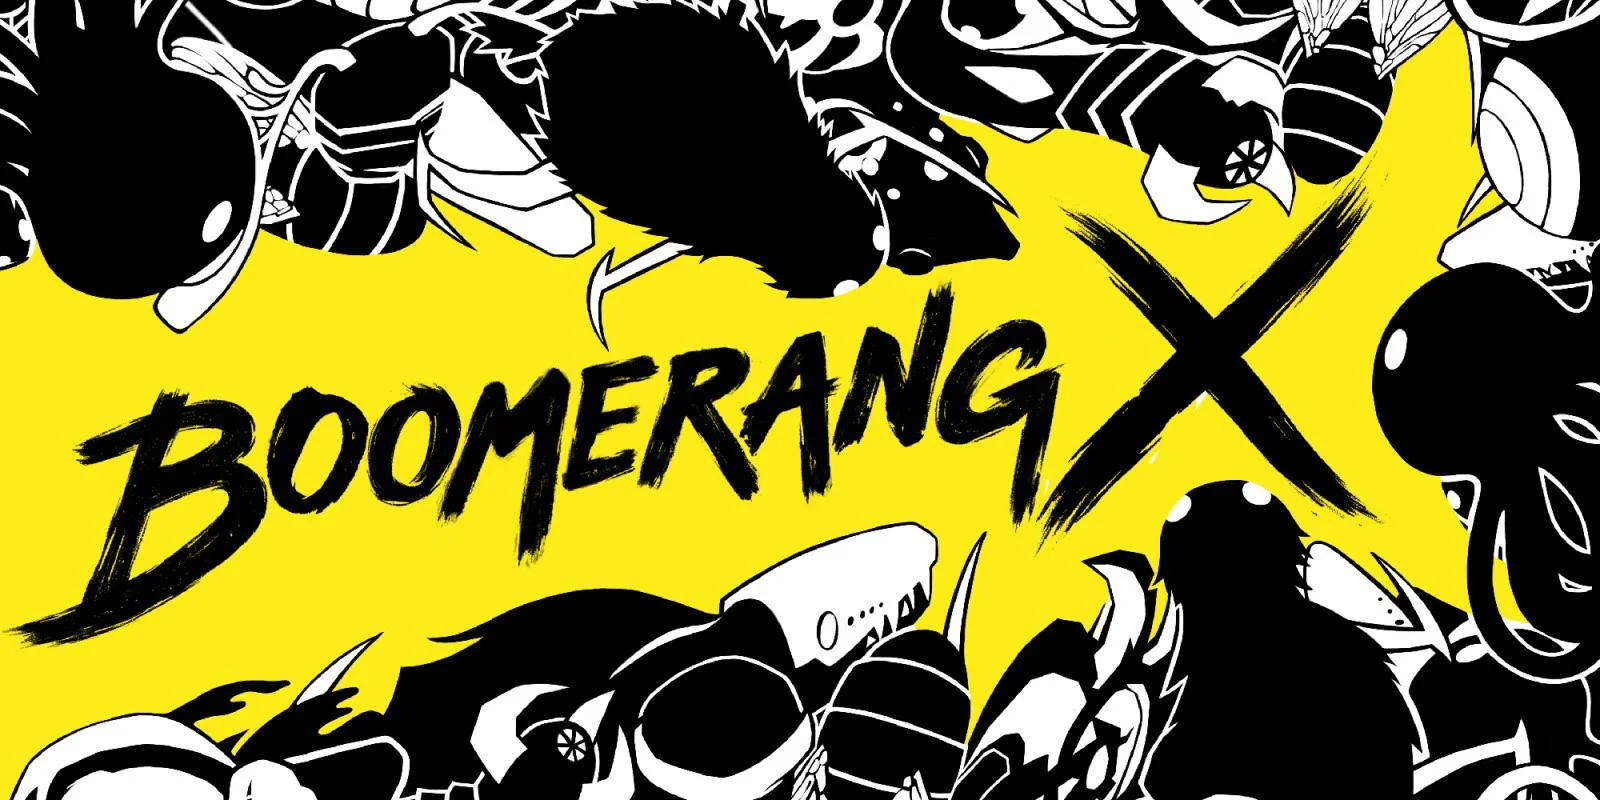 Обзор Boomerang X. Ода движению - изображение обложка